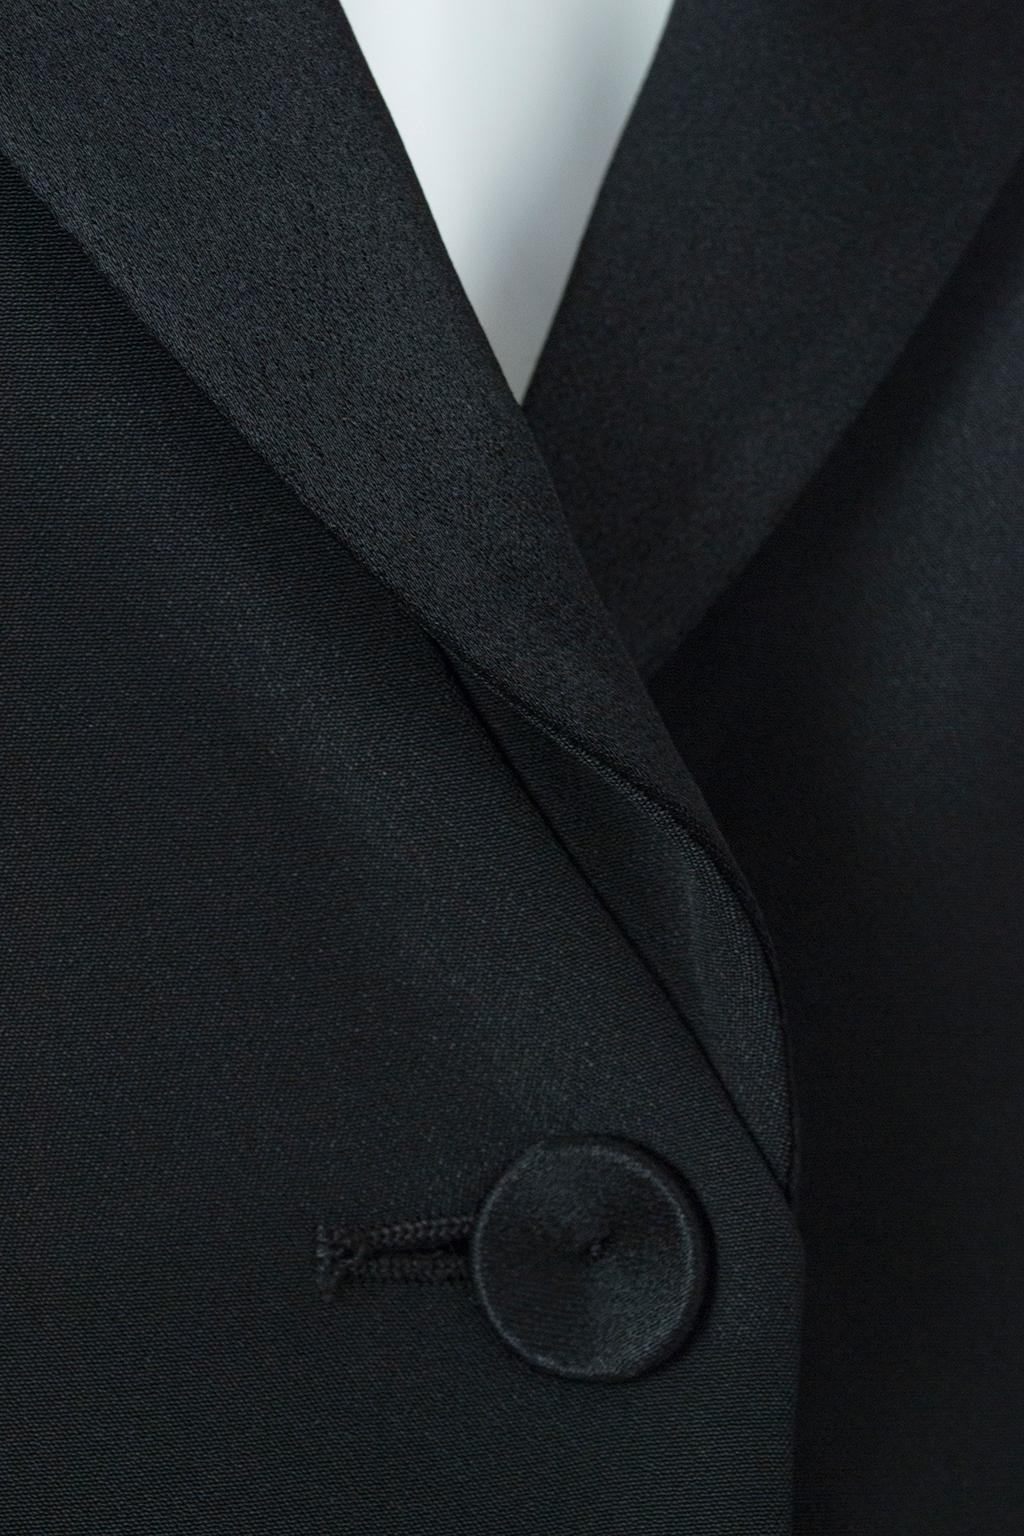 Women's Giorgio Armani Black Silk Faille “Le Smoking” Tuxedo Blazer Jacket - It 42, 2001 For Sale